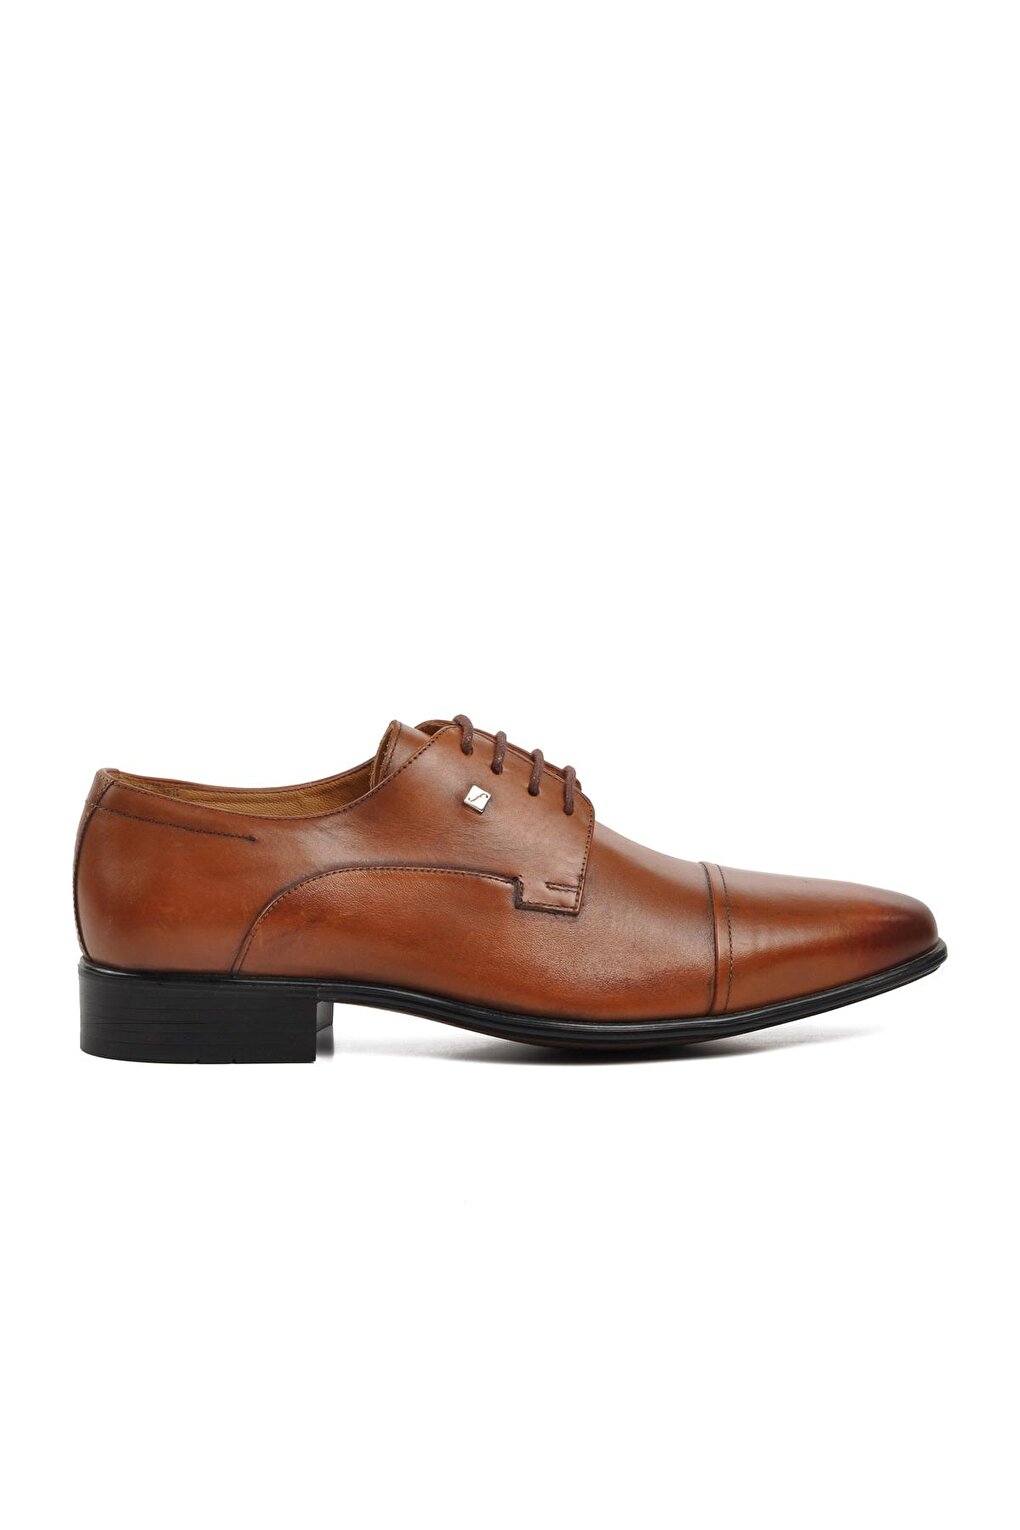 2239-4 Светло-коричневые мужские классические туфли из натуральной кожи Fosco спальня браун